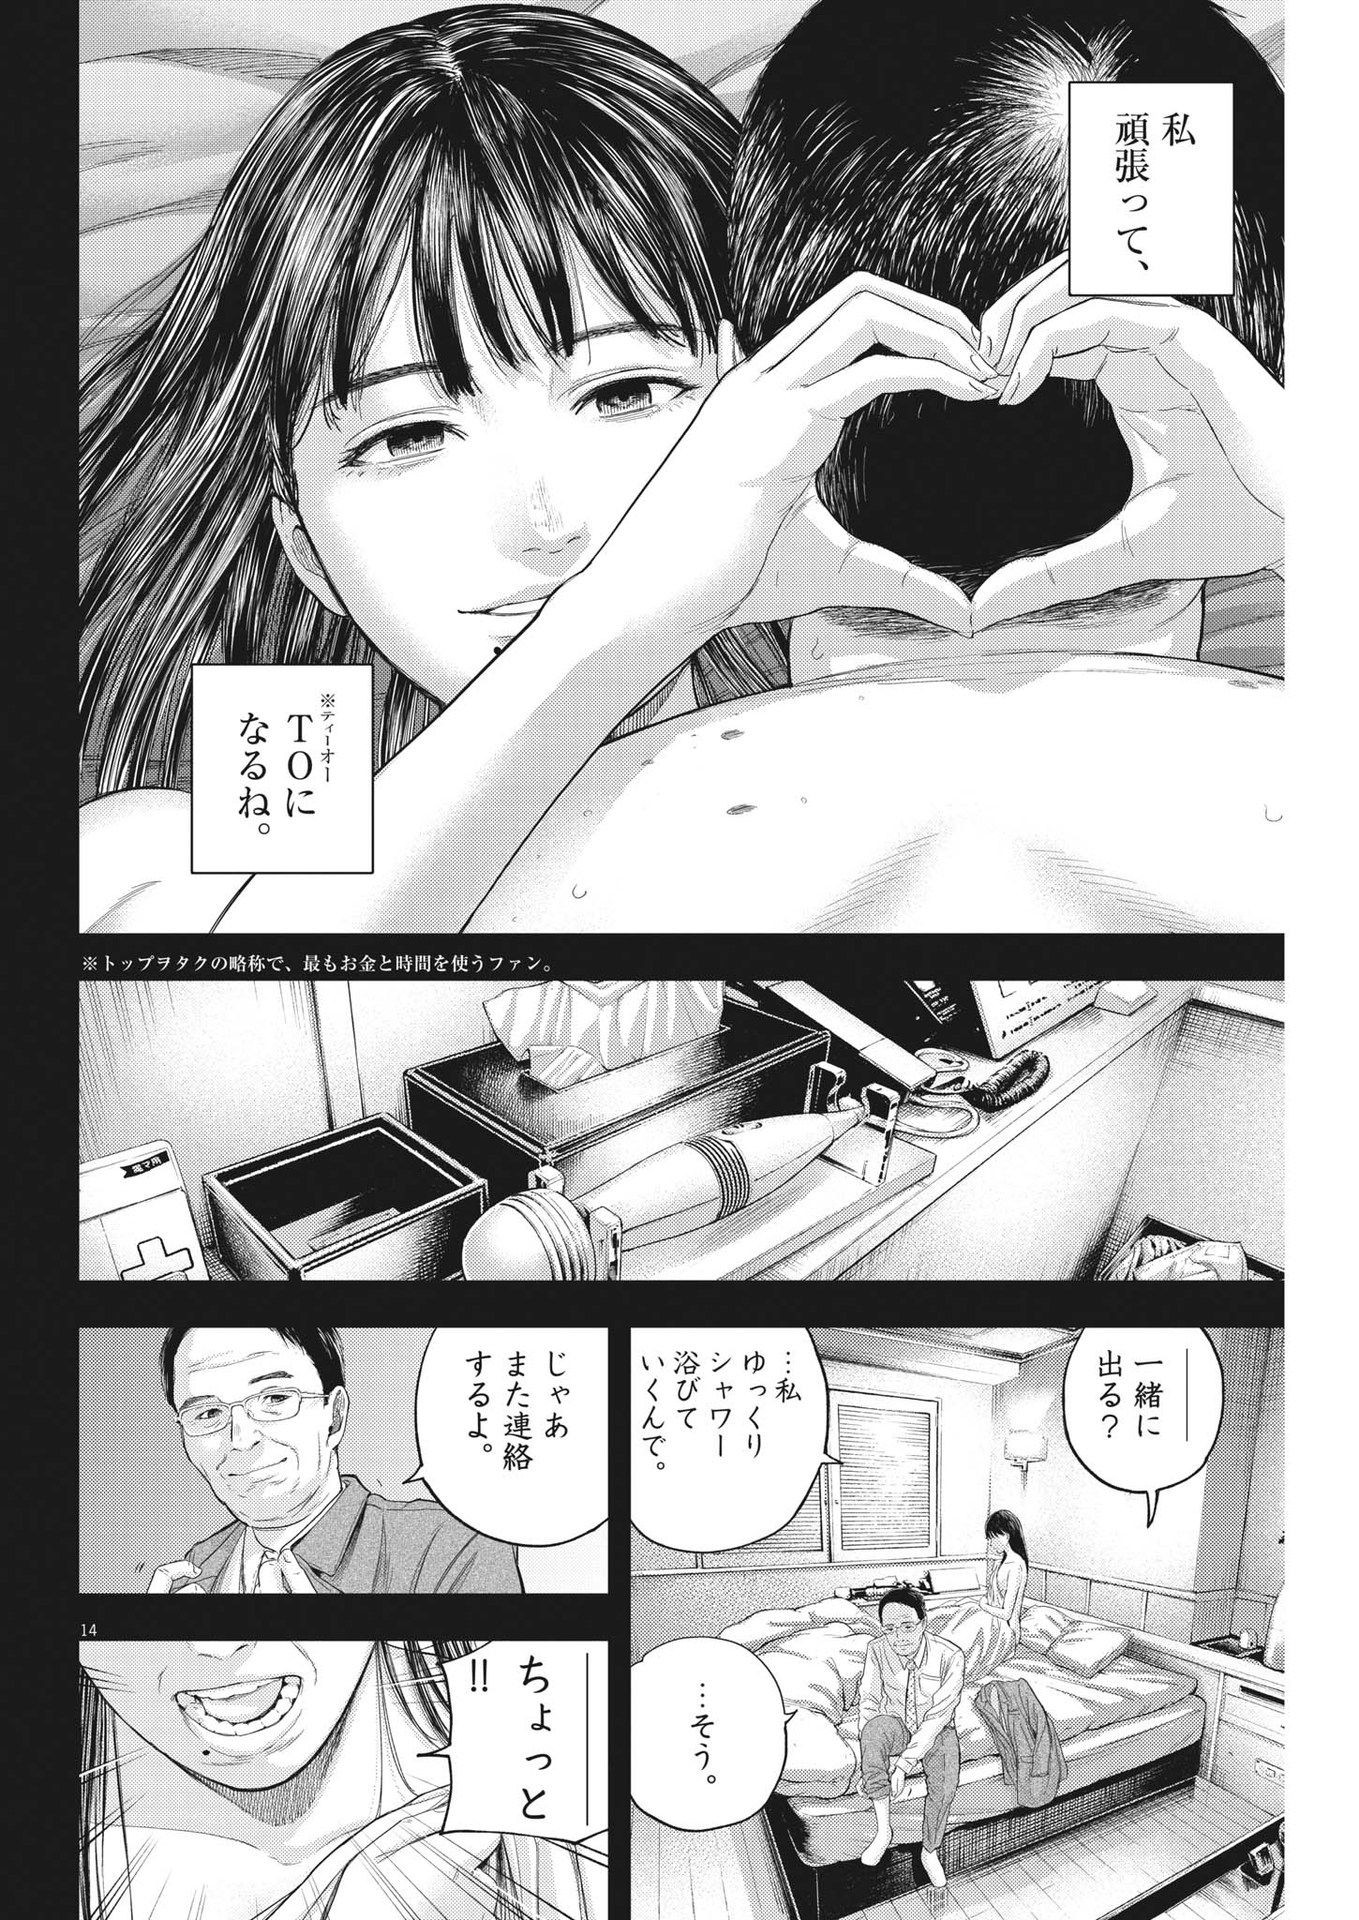 Yumenashi-sensei no Shinroshidou - Chapter 11 - Page 14